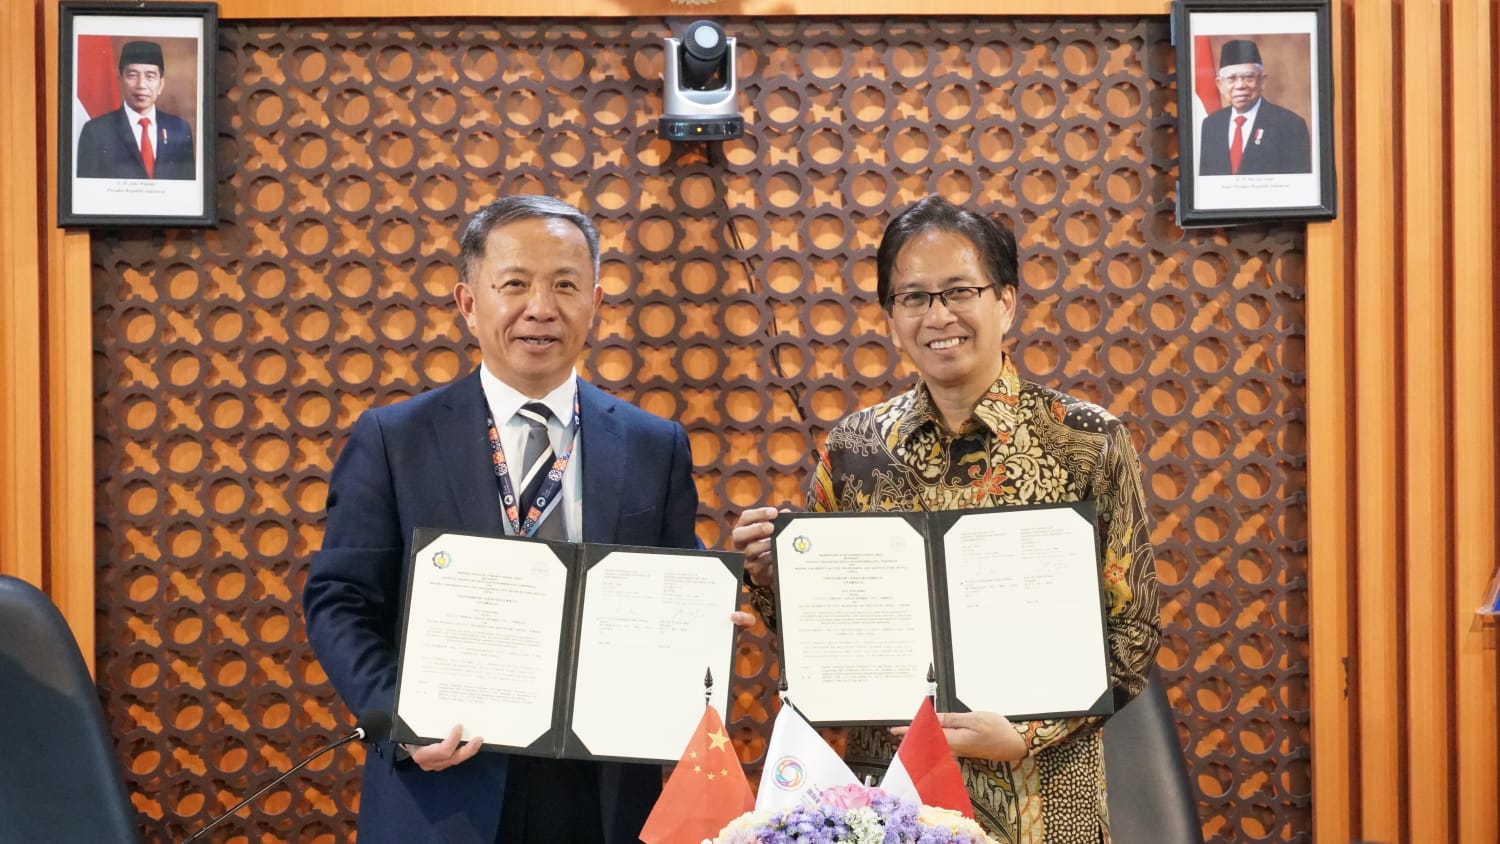 (dari kiri) Ketua Umum BRAUIC Prof Zhang Dayu bersama Rektor ITS Prof Dr Ir Mochamad Ashari MEng menunjukkan naskah MoU yang telah ditandatangani